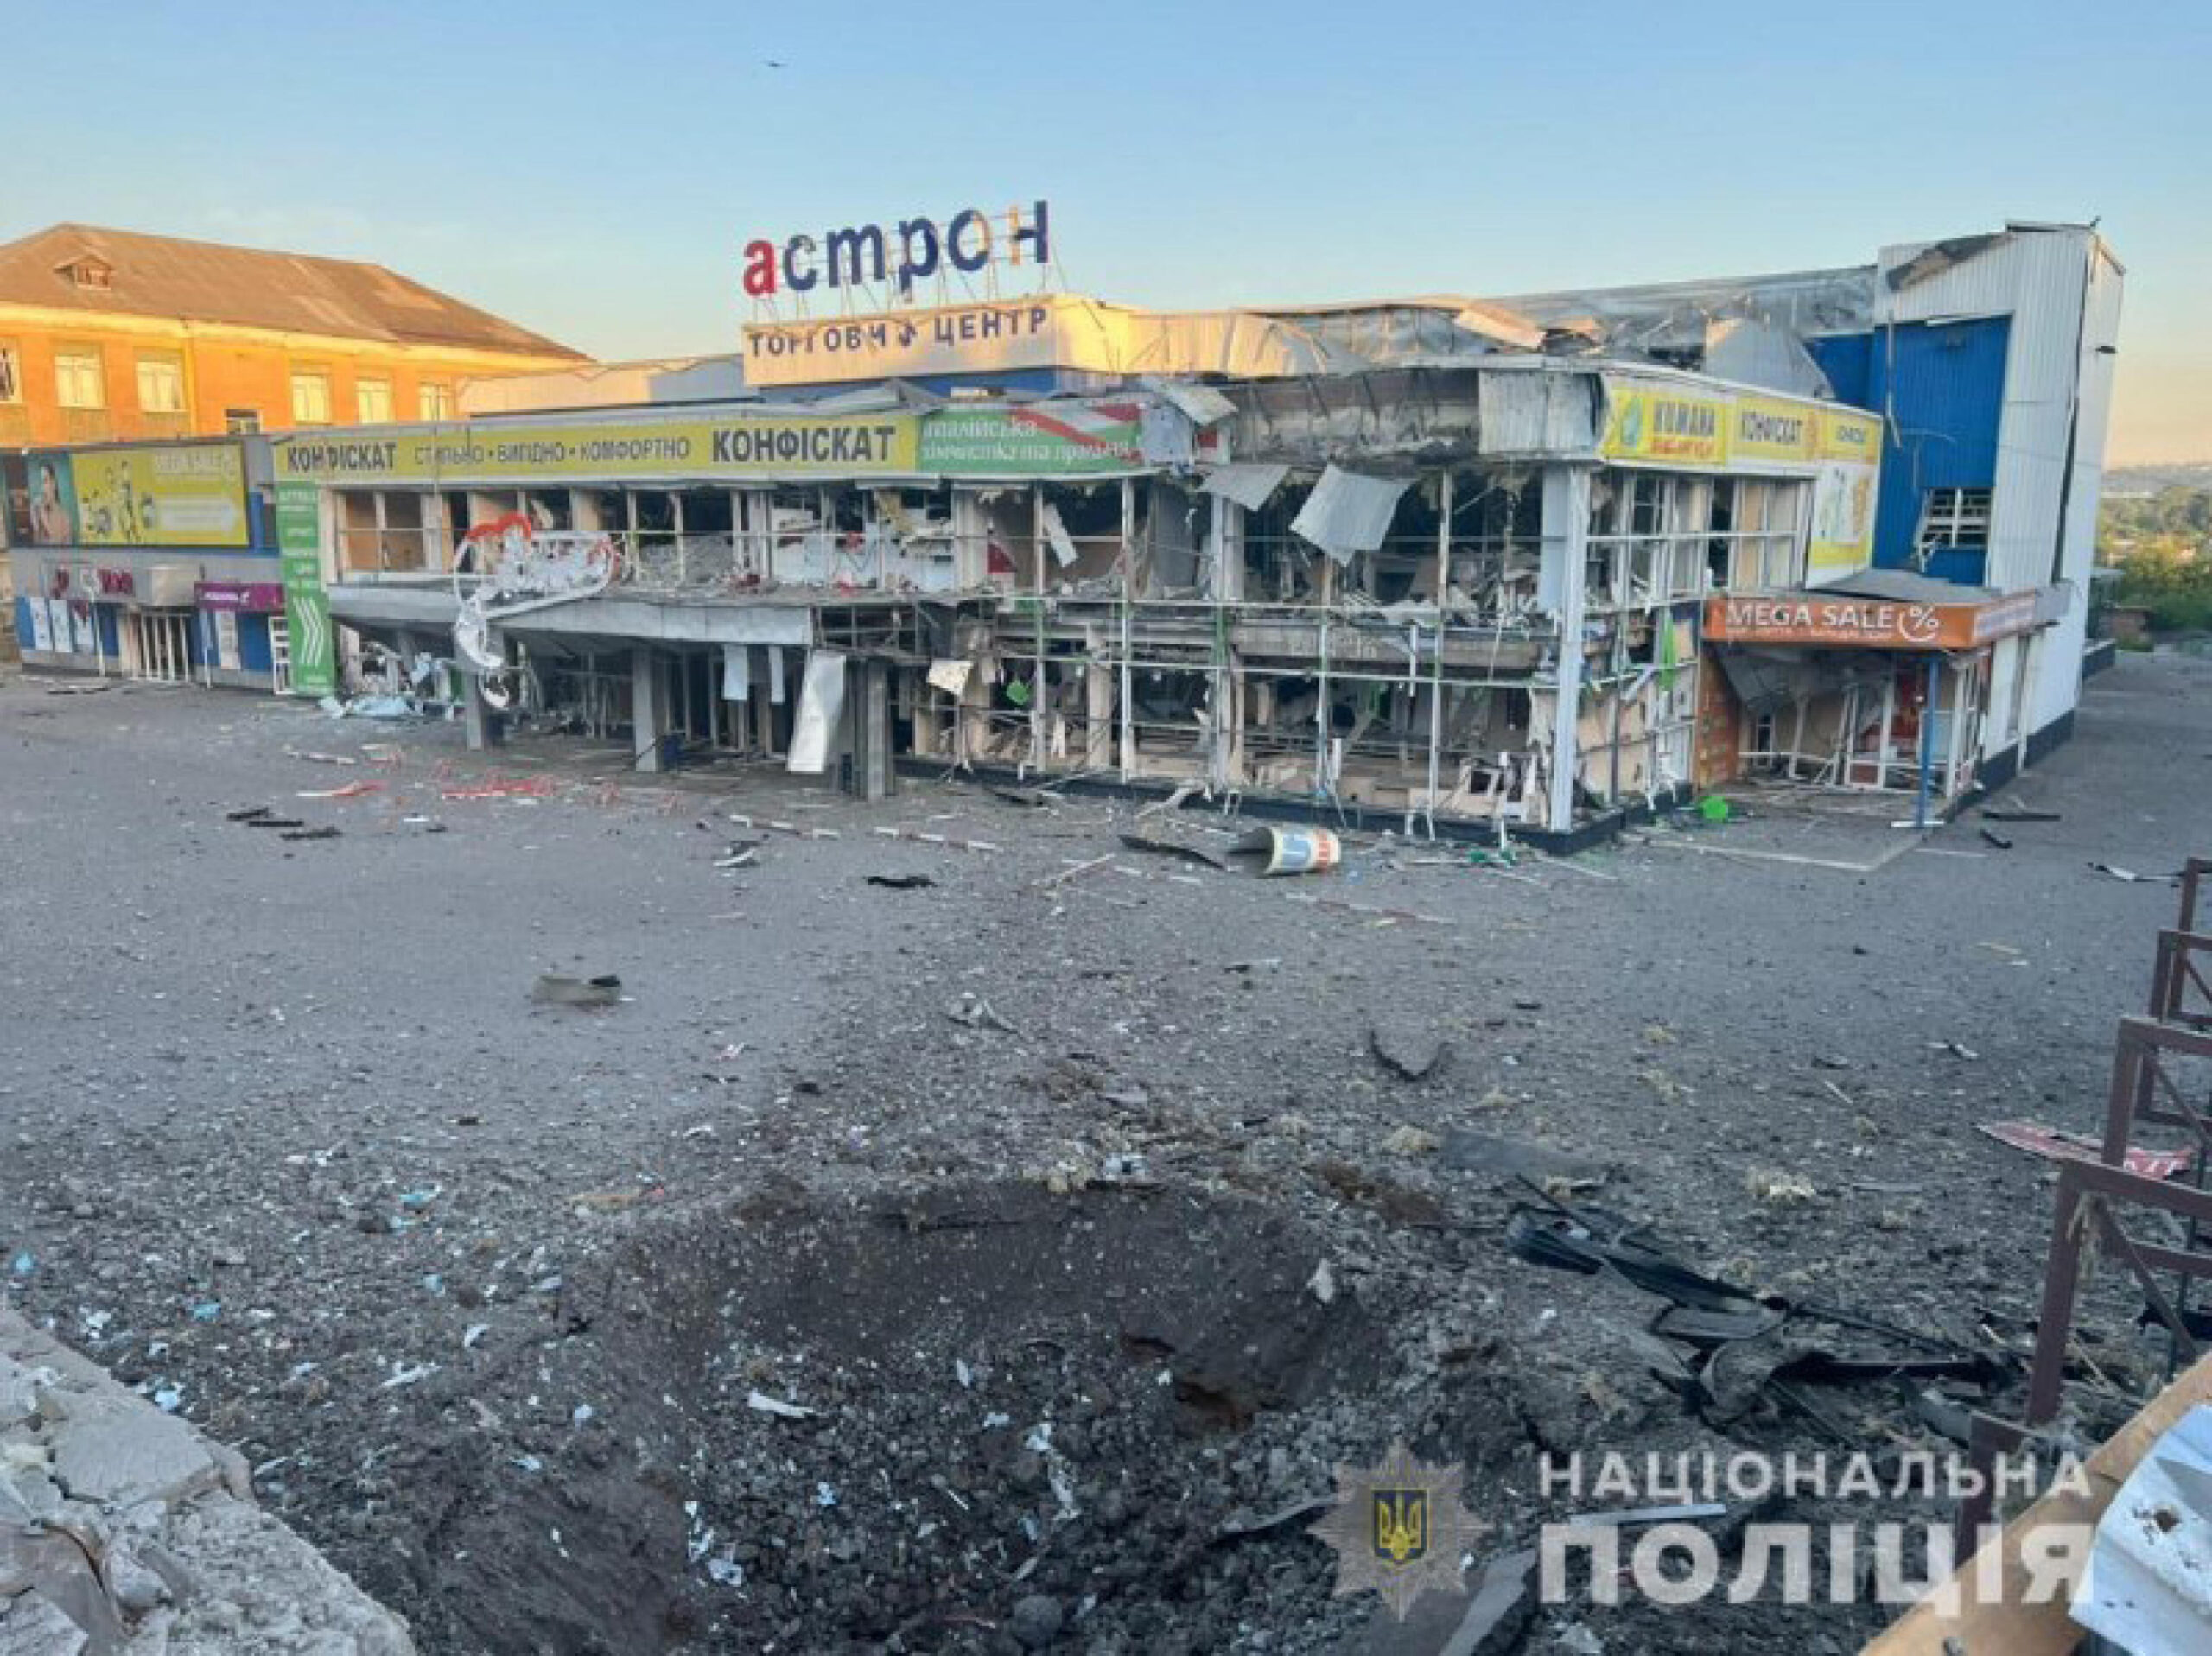 ''La polizia della regione di Donetsk ha documentato le conseguenze di 20 attacchi russi. Gli occupanti hanno bombardato 17 insediamenti, uccidendo e ferendo civili. I russi hanno colpito le città di Avdiyivka, Maryinka, Hirnyk, Sloviansk, Druzhkivka, Kostyantynivka, Chasiv Yar, Siversk, Toretsk, Bakhmut, i villaggi di Myrolyubivka, Khrestishche, Georgiivka, Novomykolaivka, Zaytseve e Semihirya''. E' quanto si legge in un post sul canale Telegram della Polizia ucraina, 09 luglio 2022.
POLIZIA UCRAINA
+++ATTENZIONE LA FOTO NON PUO' ESSERE PUBBLICATA O RIPRODOTTA SENZA L'AUTORIZZAZIONE DELLA FONTE DI ORIGINE CUI SI RINVIA+++